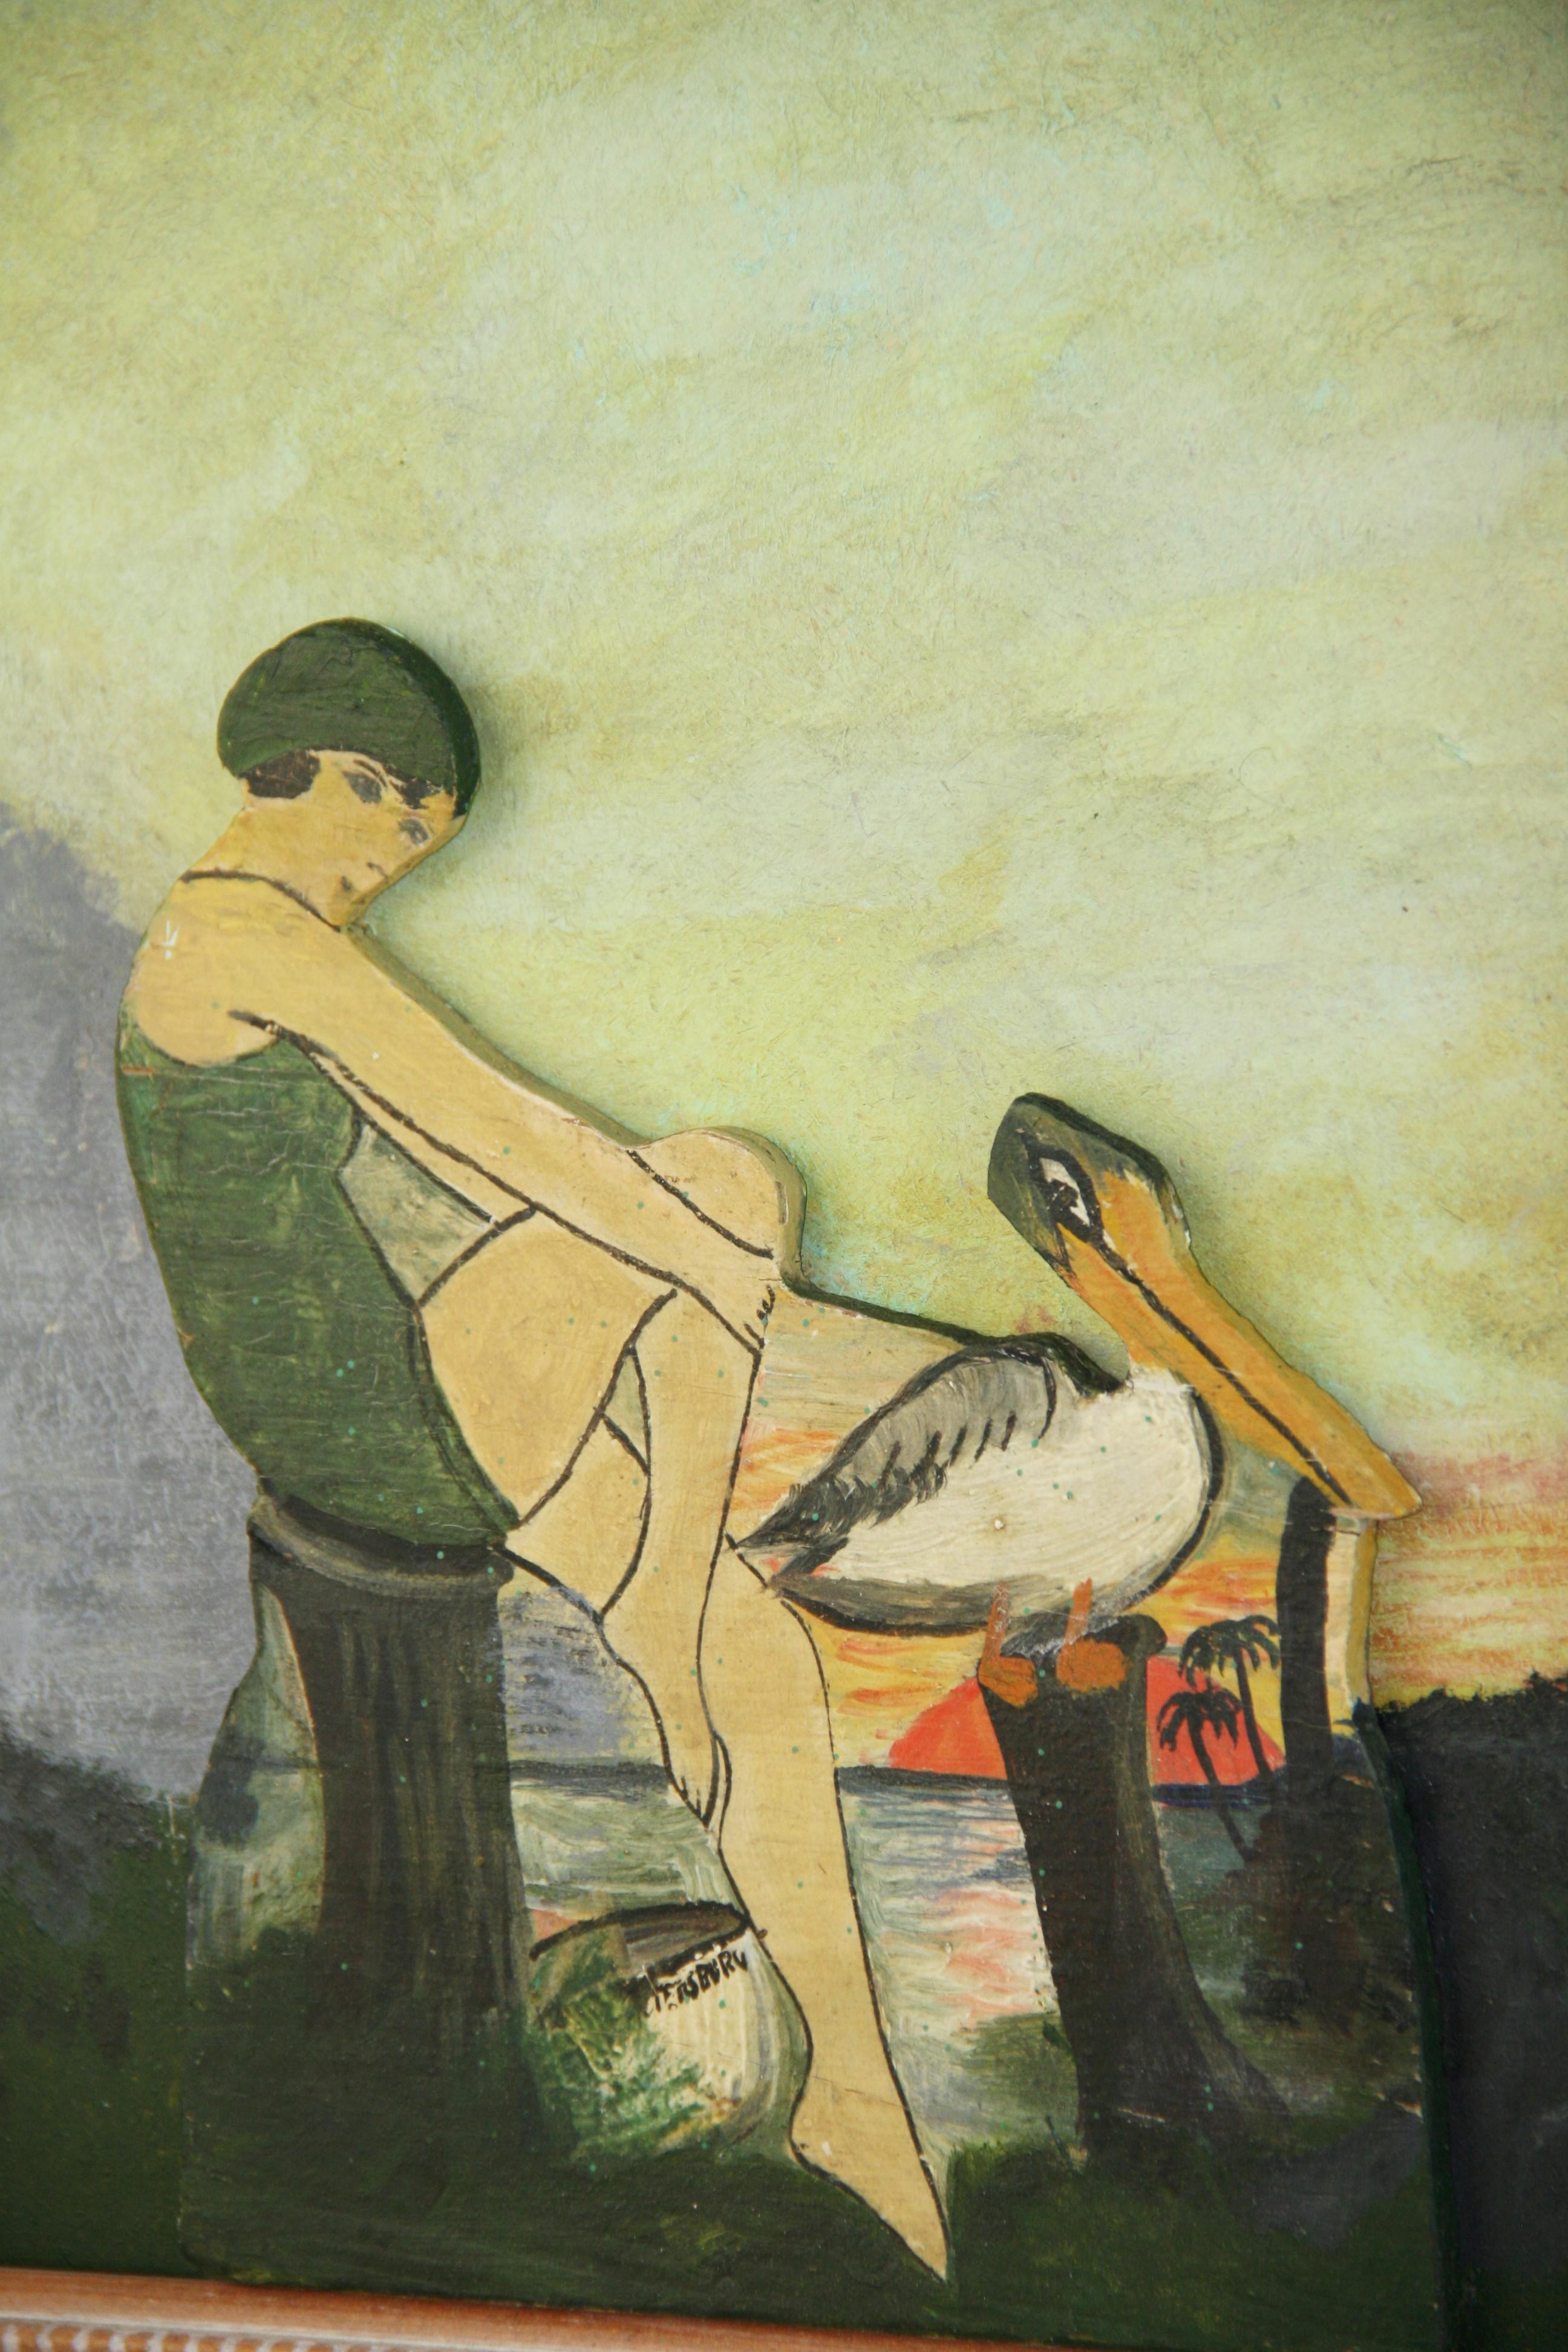 4032 Skandinavisches Gemälde eines  weibliche Badende auf ausgeschnittenem Holz, das auf einem bemalten Hintergrund angebracht ist
Set in einem Holzrahmen Bildgröße 8.5x10.5